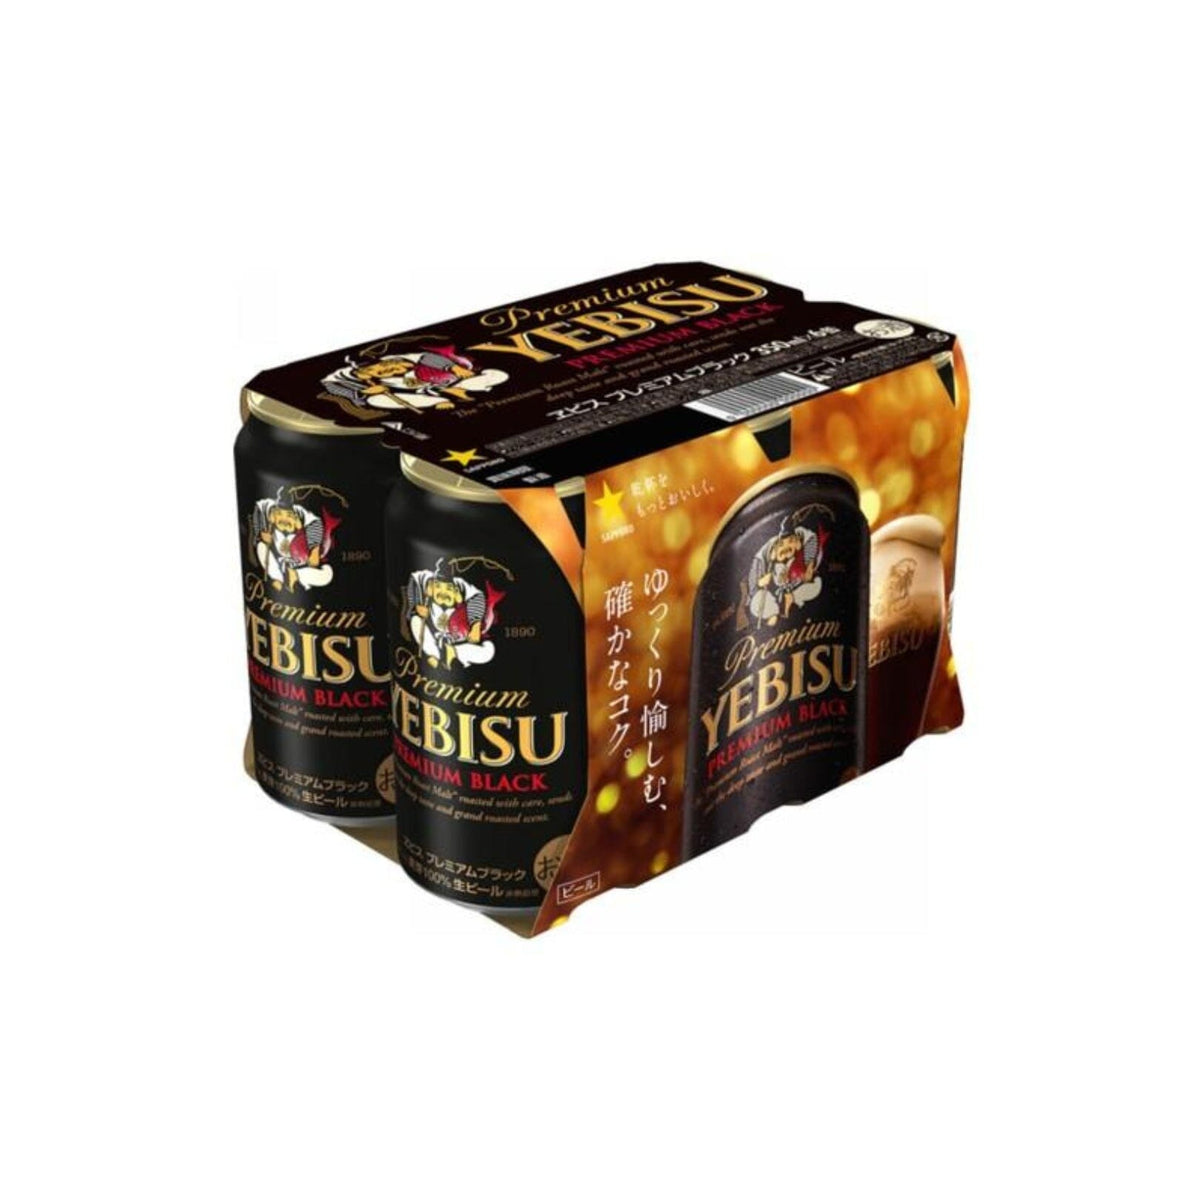 エビス 黒ビール [6缶 x 350ml] Premium Yebisu Beer Black 6 Cans ( 6 x 350ml ) 5.5%